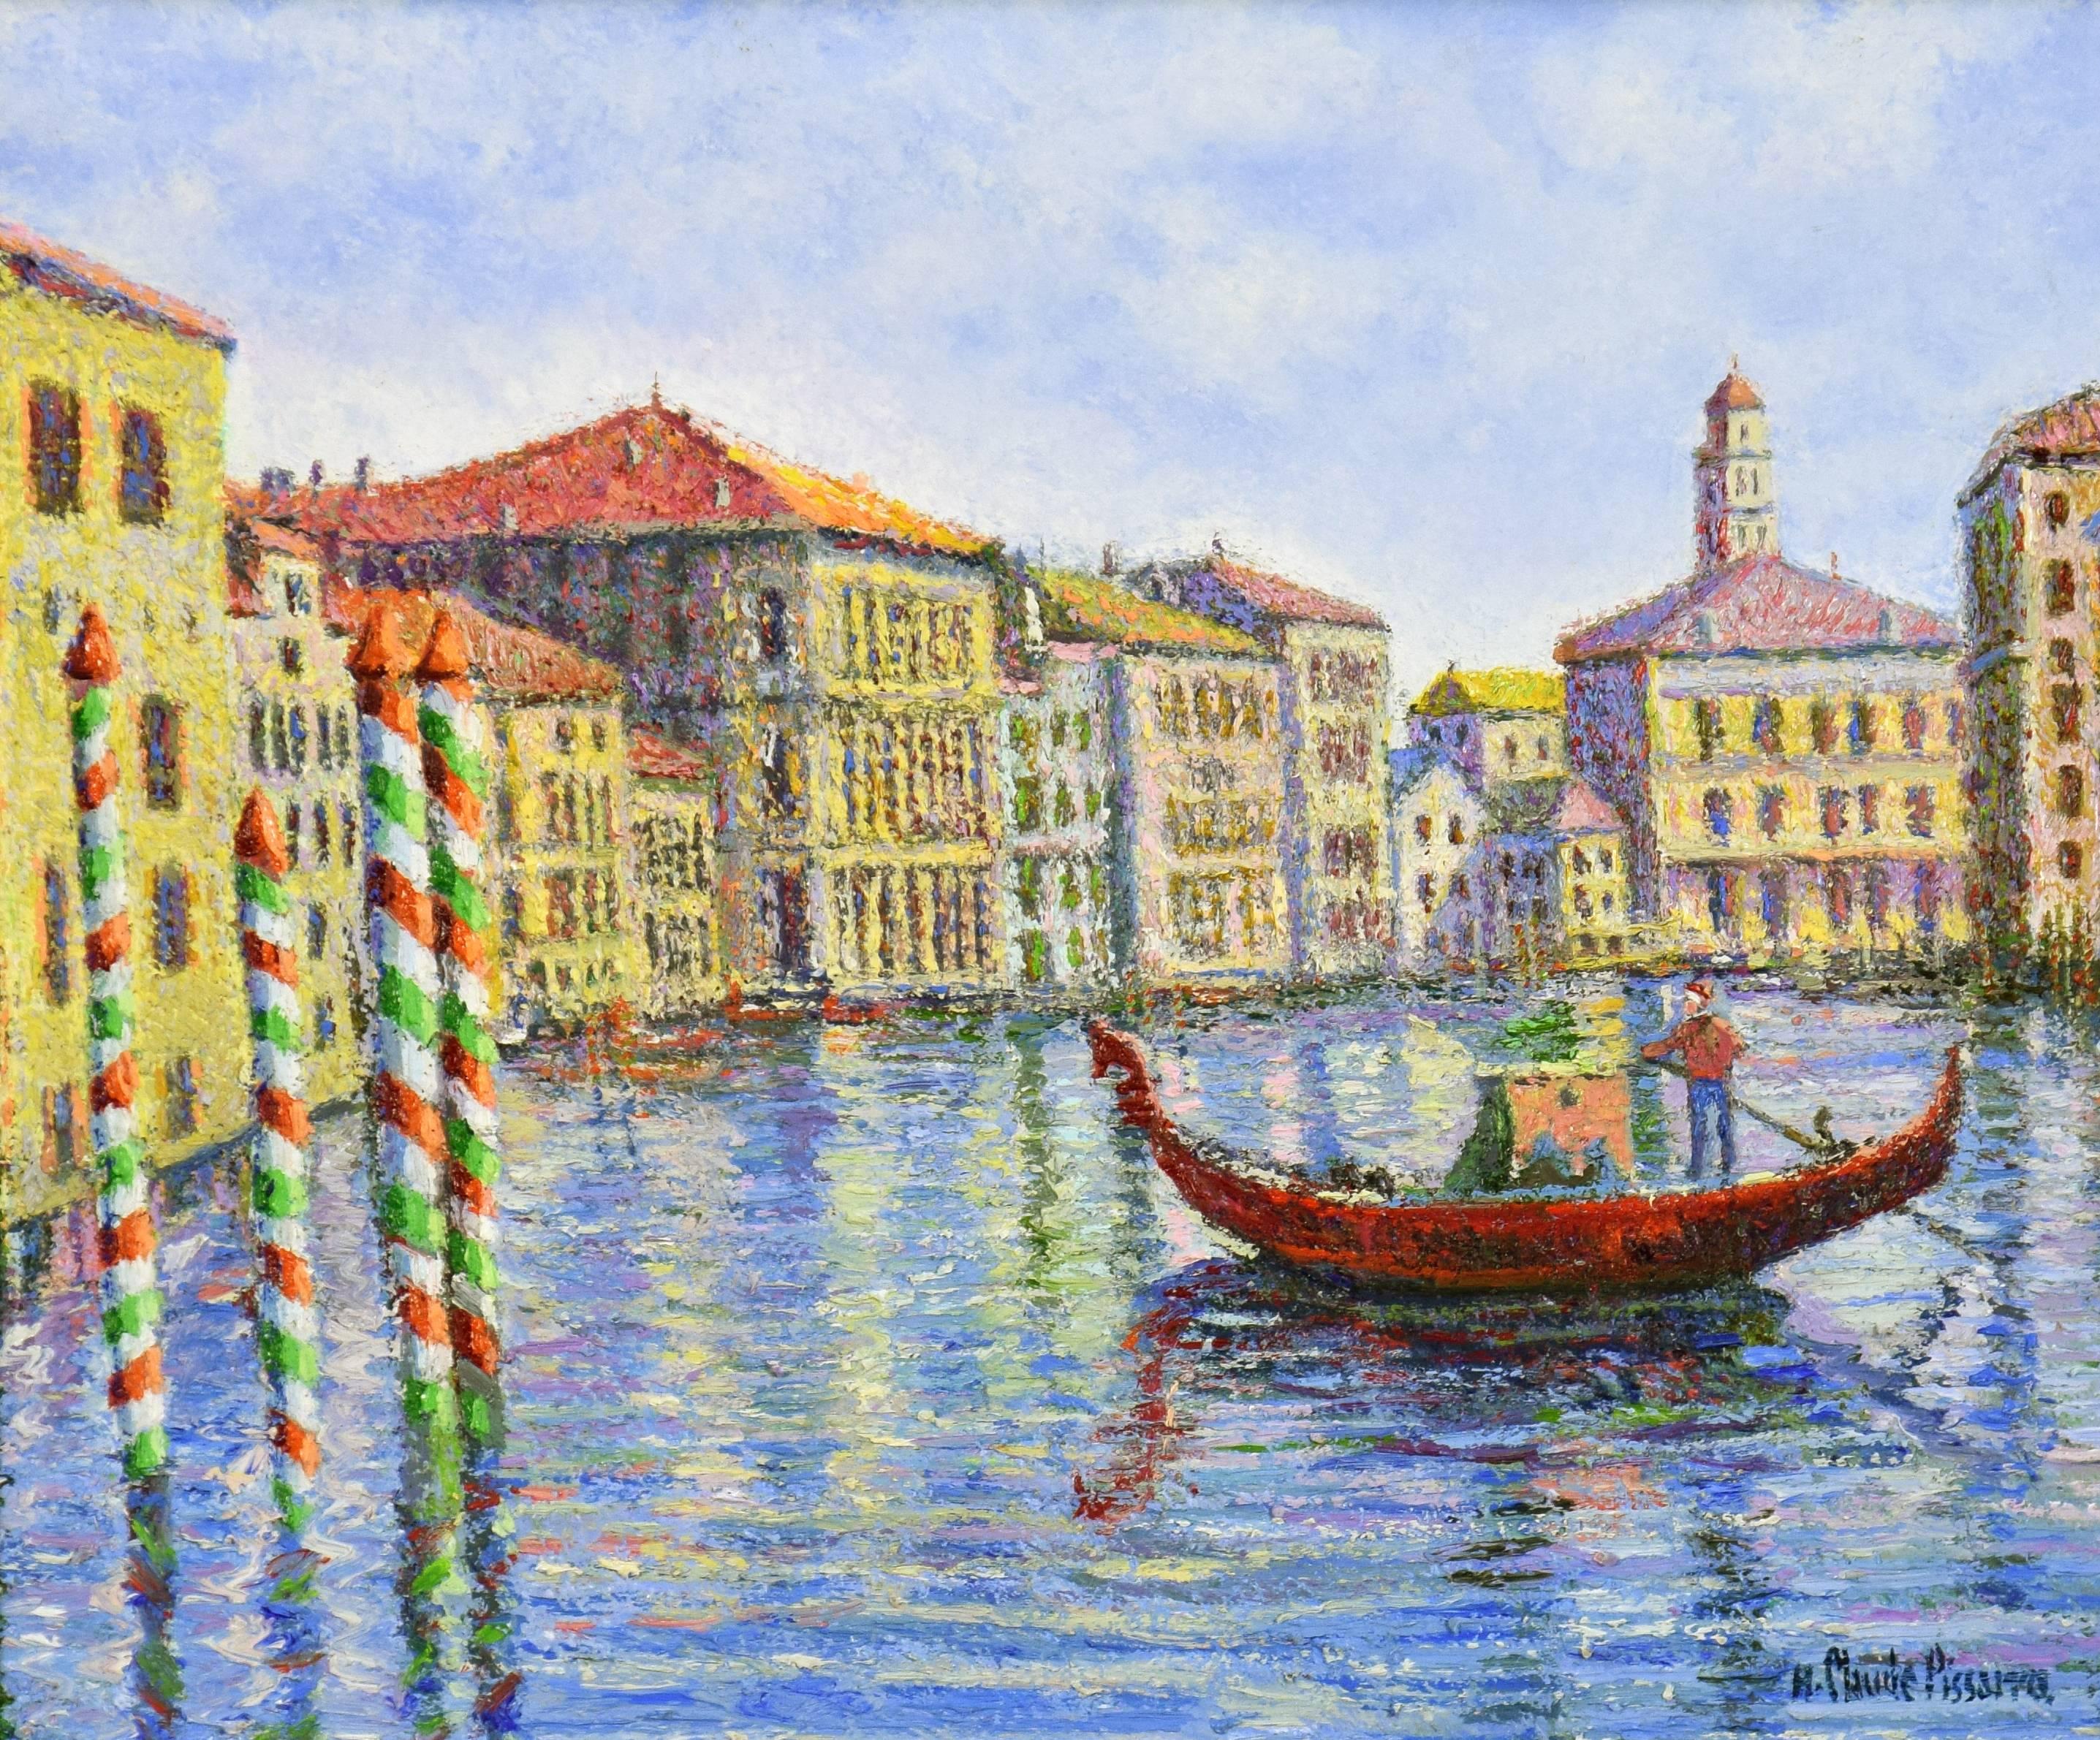 Hughes Claude Pissarro Figurative Painting - Crépuscule à Venise by H. CLAUDE PISSARRO - Post-Impressionist style painting